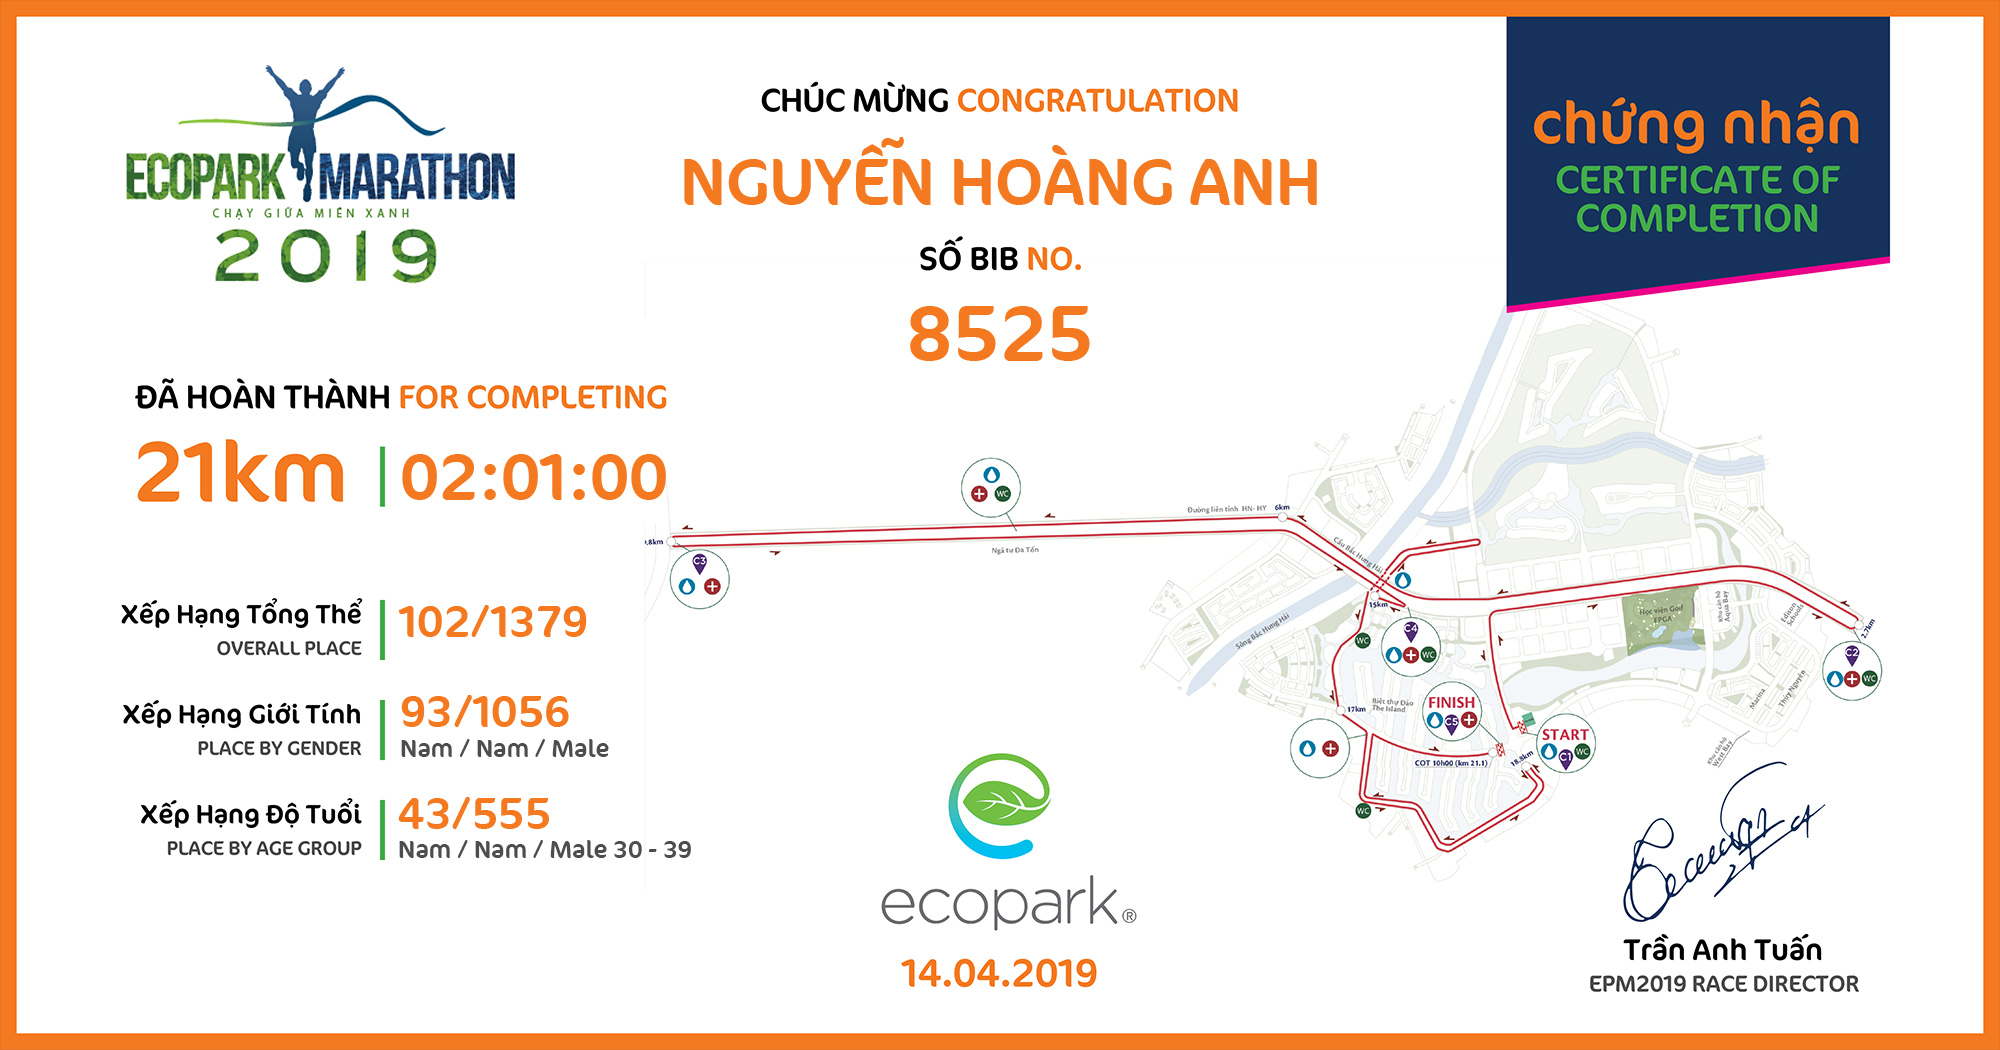 8525 - Nguyễn Hoàng Anh